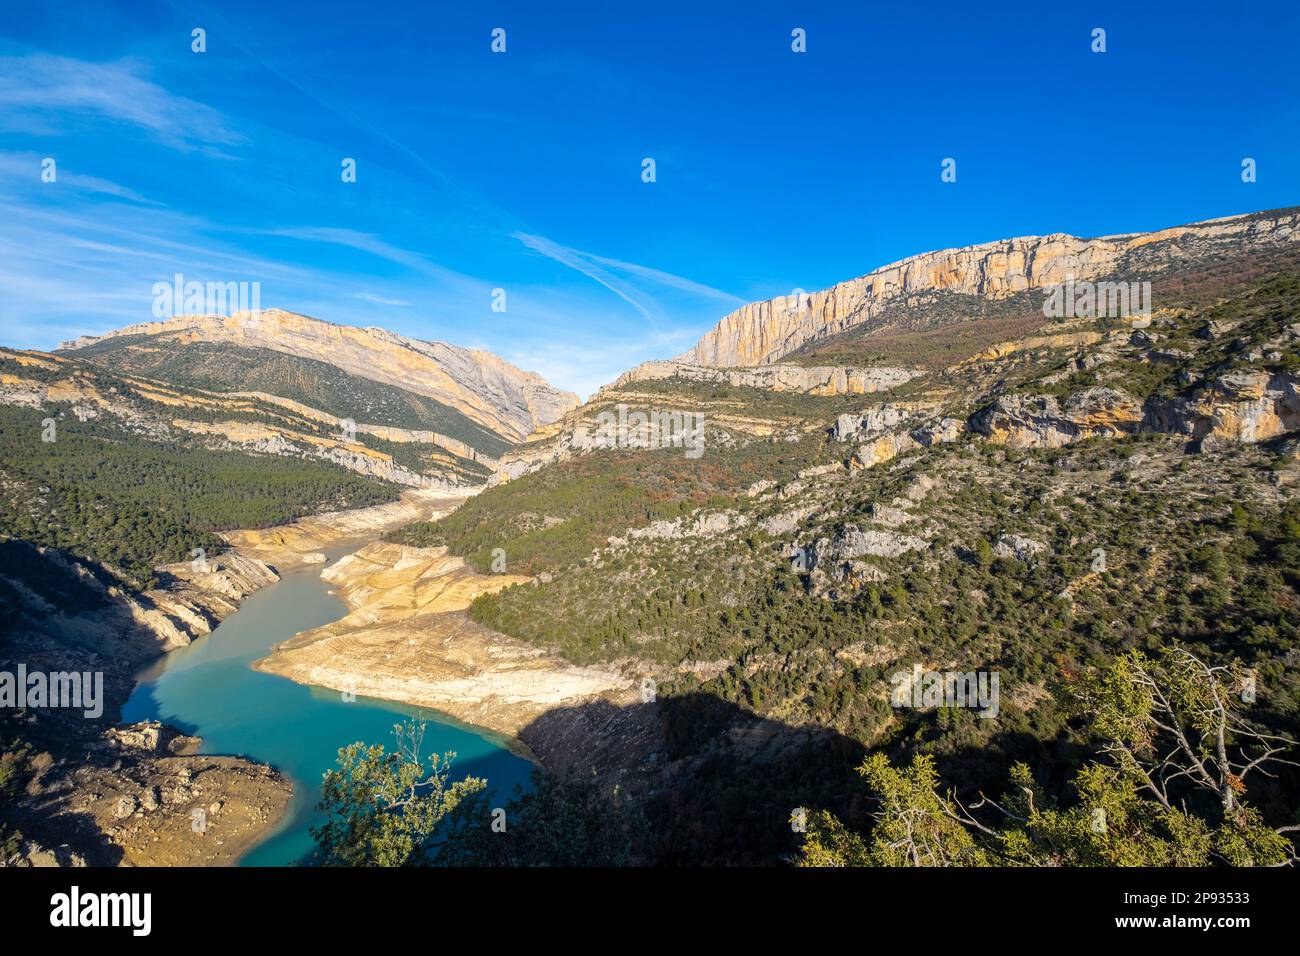 Panoramablick auf den Fluss Noguera Ribagorzana und die Montrebei-Schlucht im Naturschutzgebiet Montsec in der Provinz Lleida in Katalonien, Spanien Stockfoto